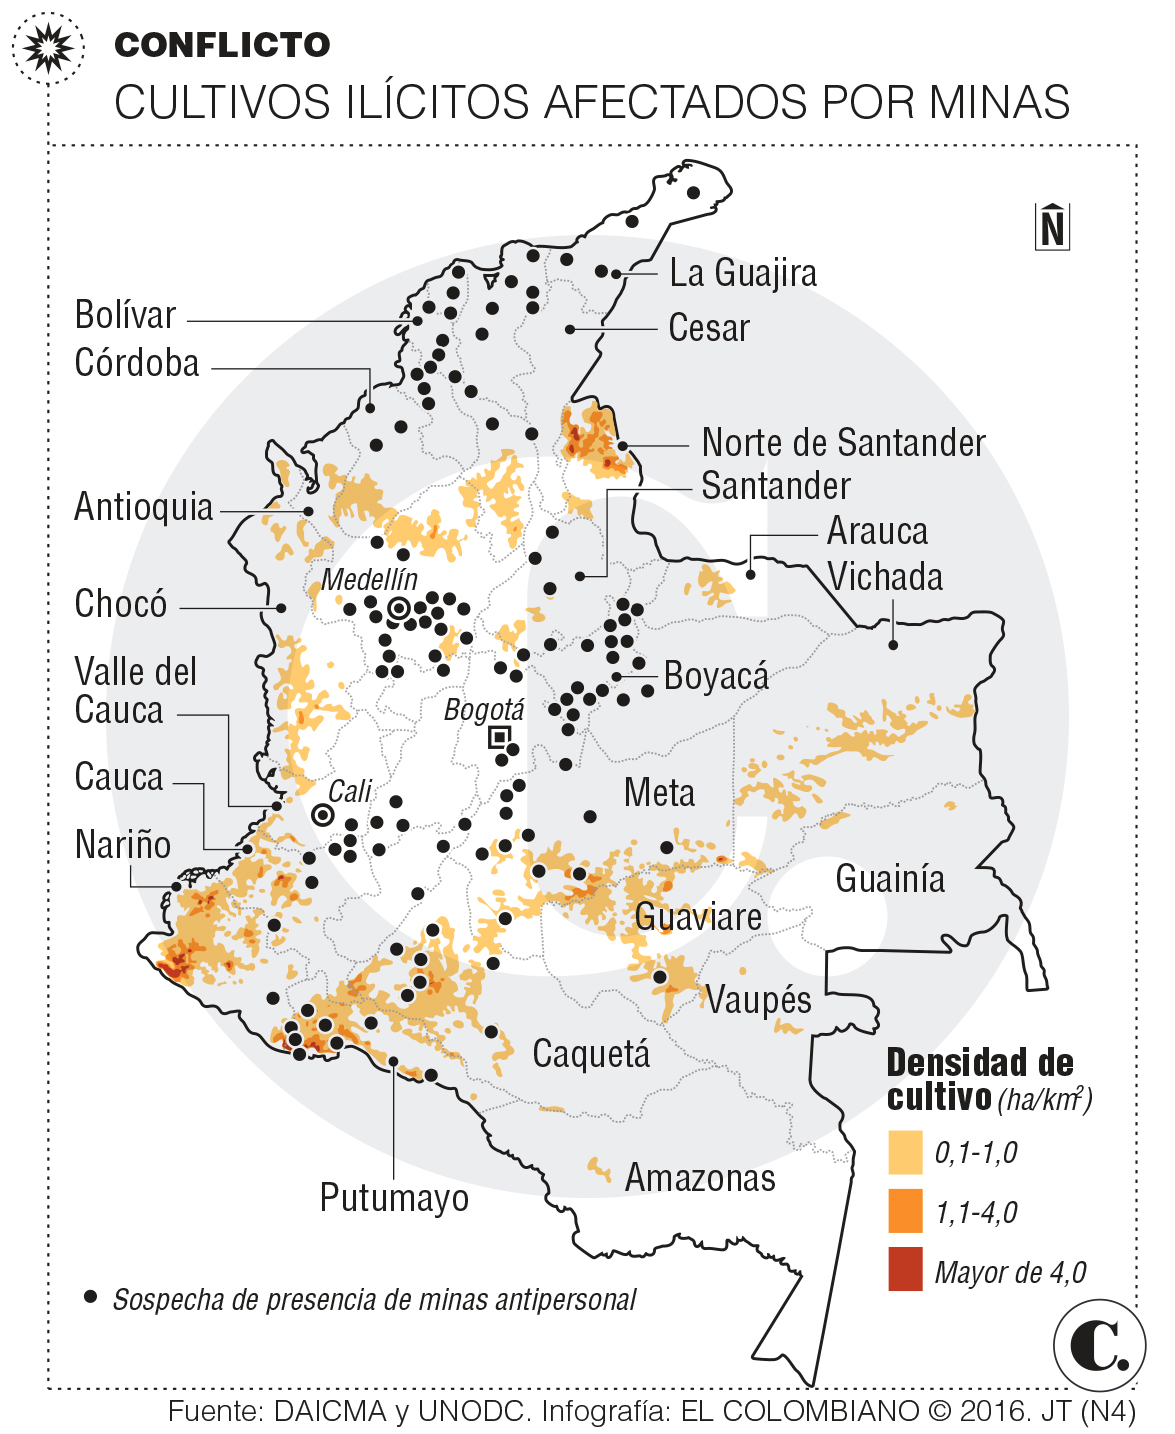 Acuerdo con las Farc y reducción de cultivos ilícitos en Colombia